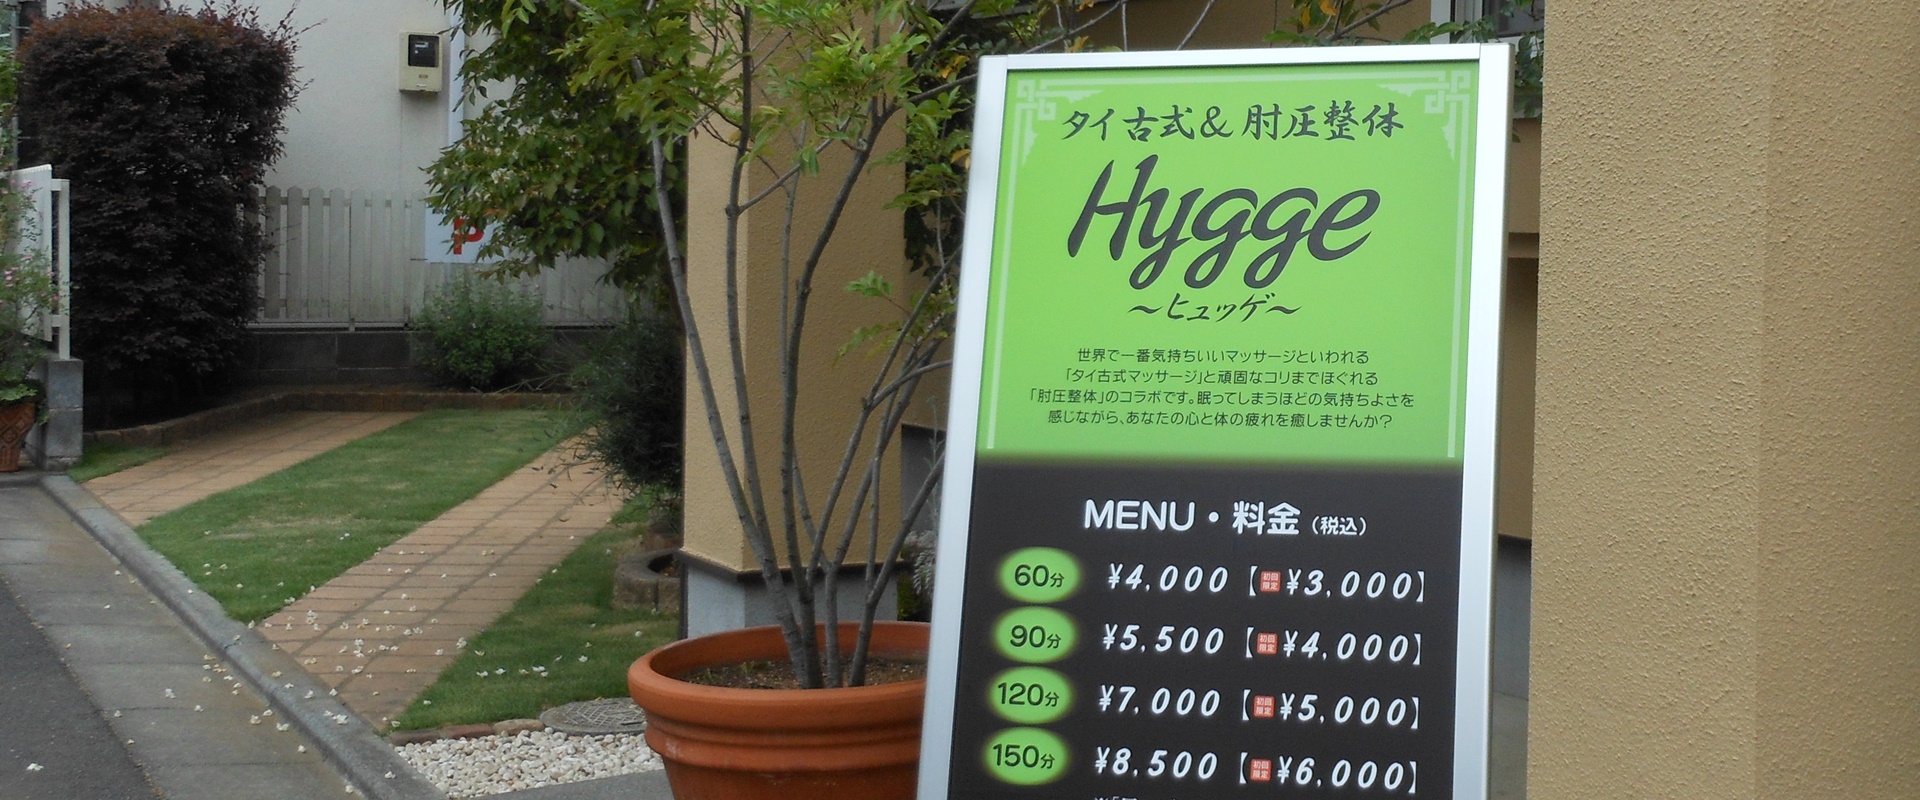 Hygge ～ ヒュッゲ ～